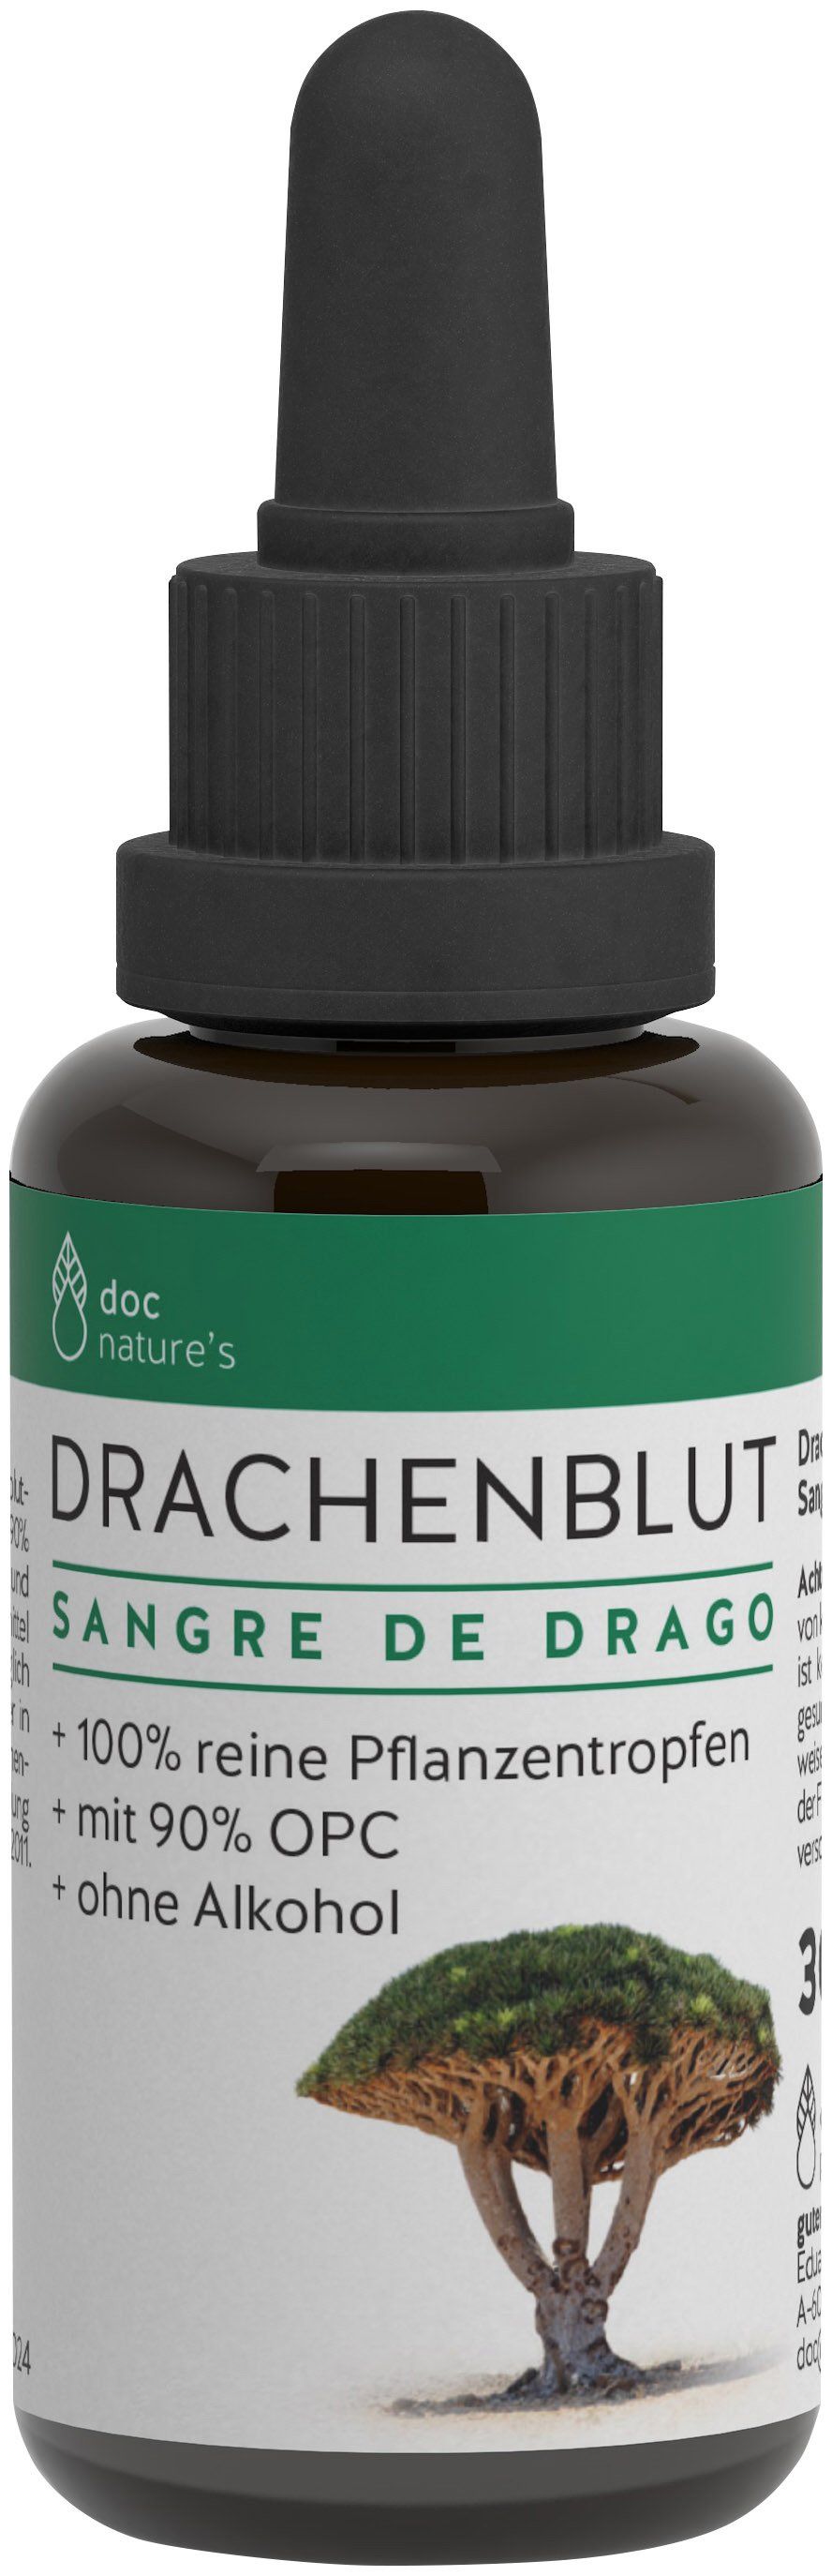 doc nature's  DRACHENBLUT SANGRE DE DRAGO